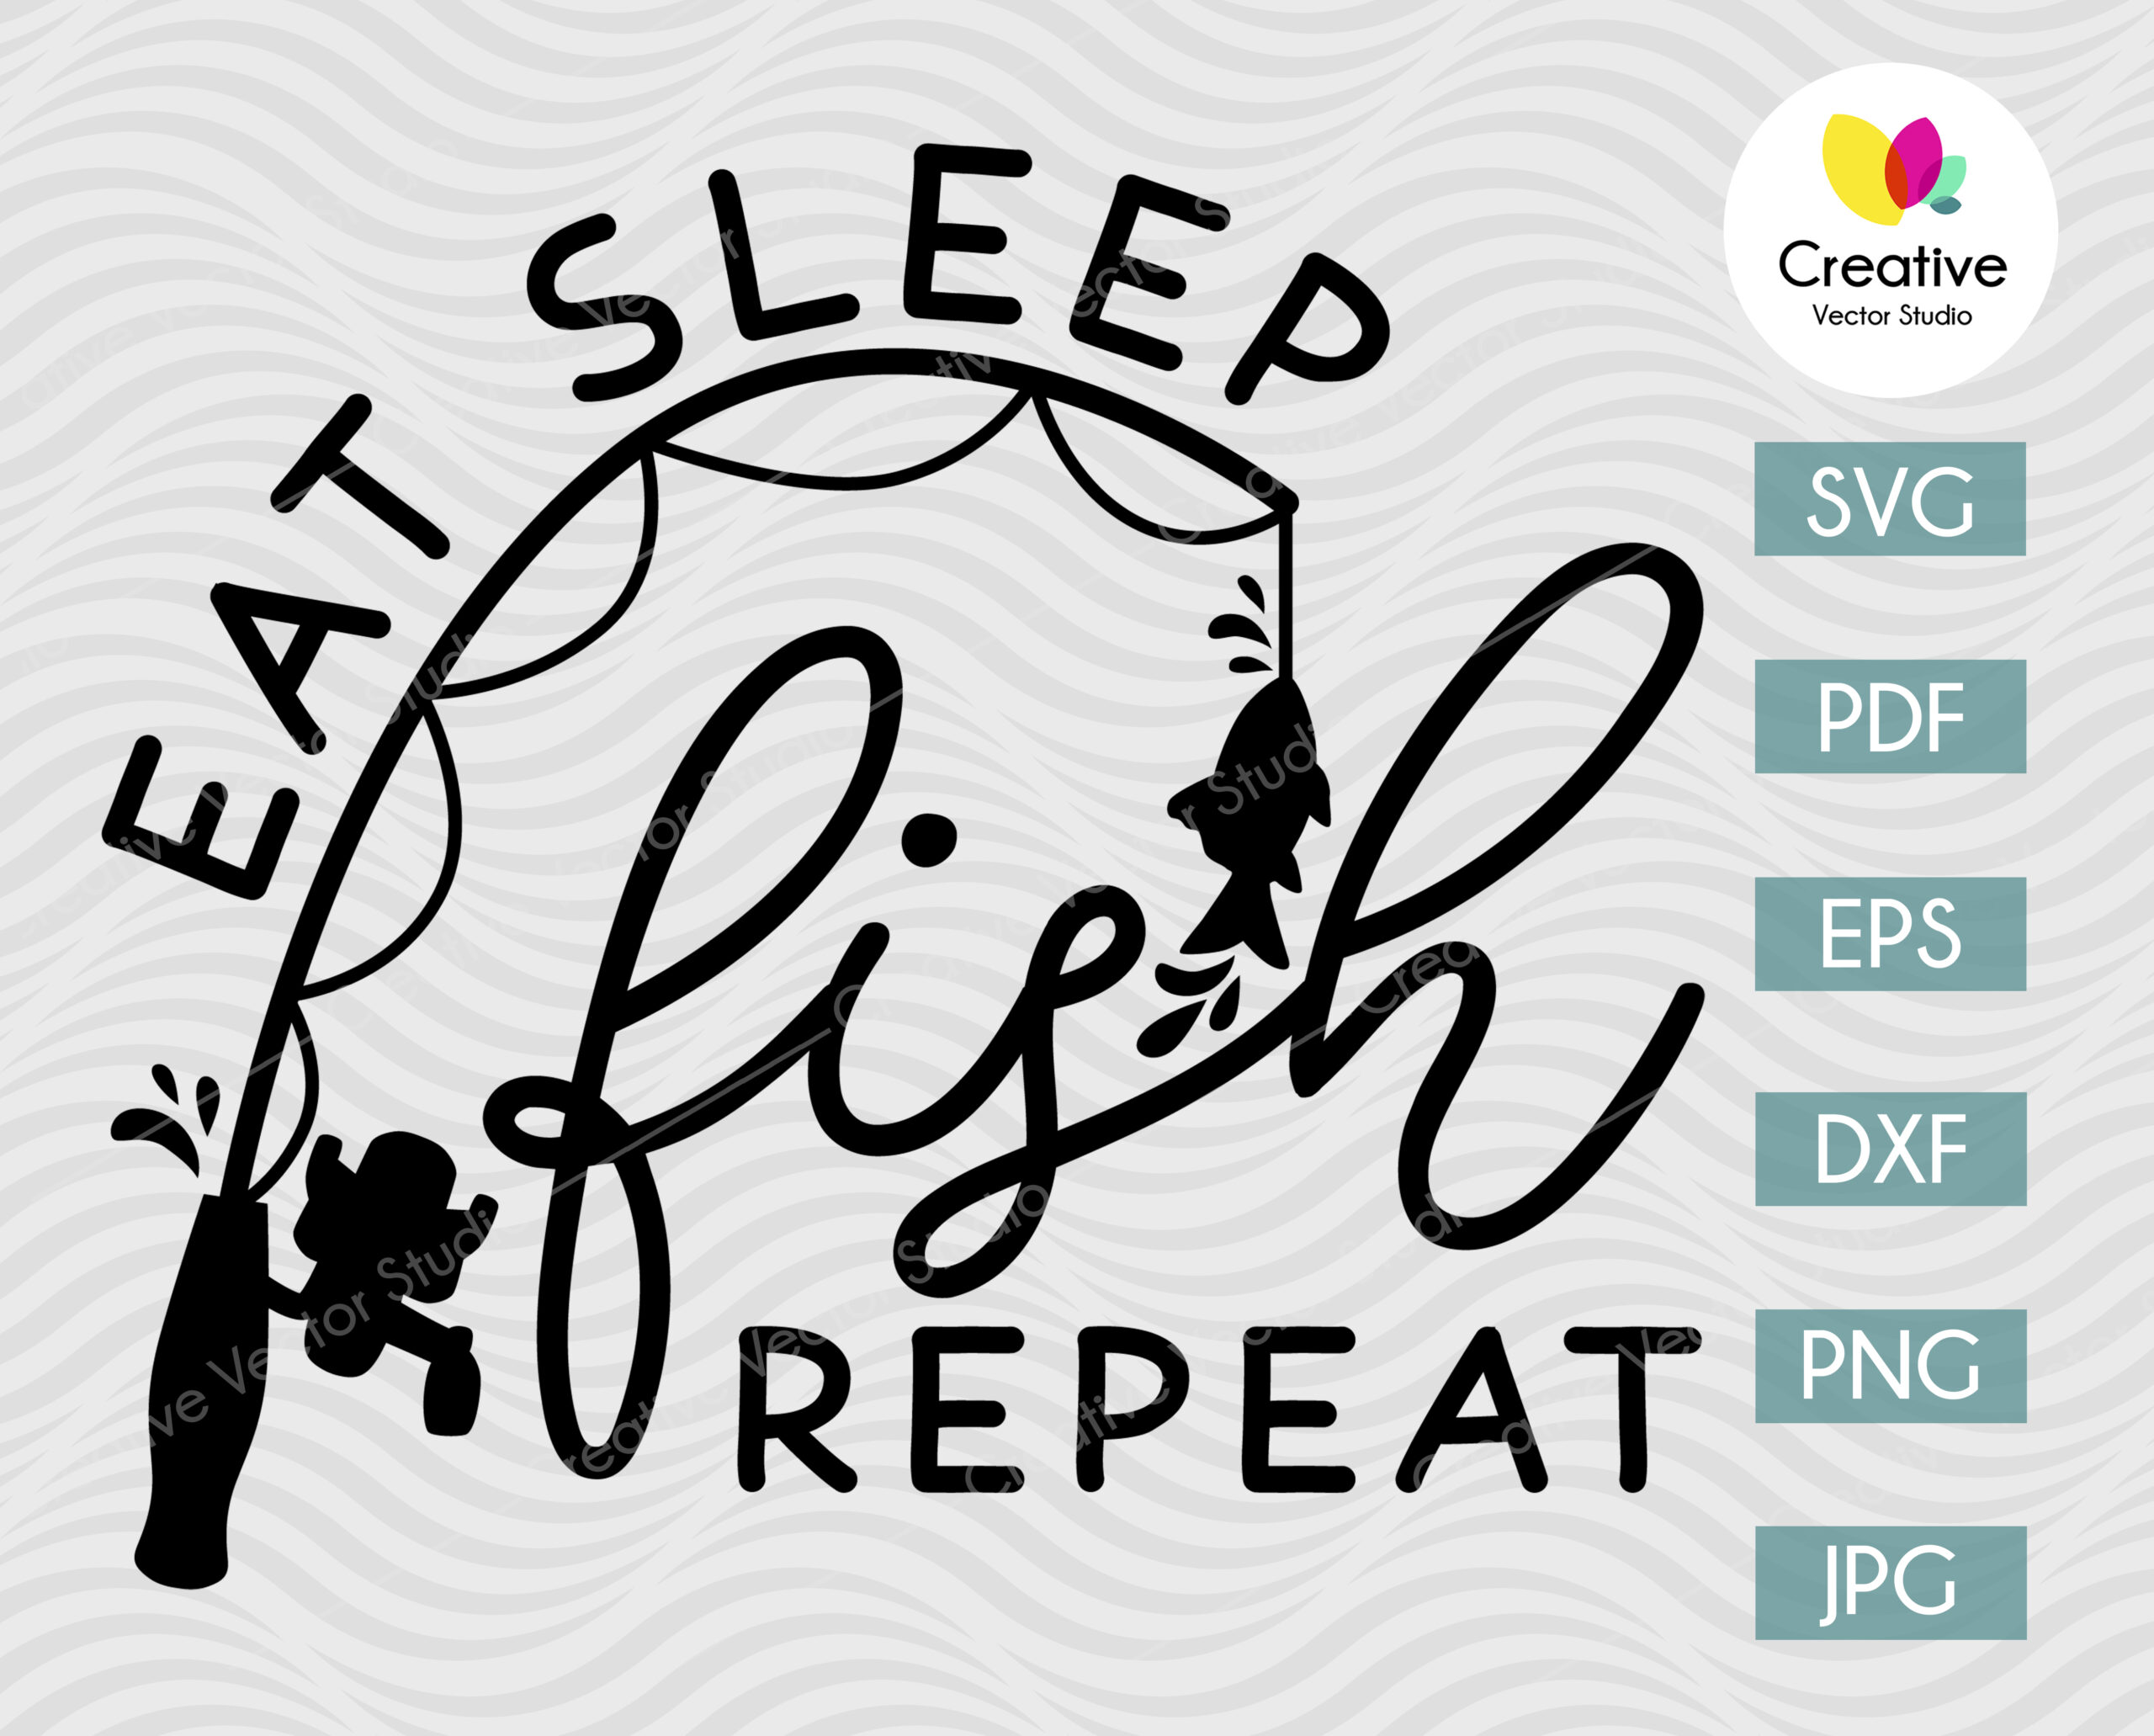 Download Eat Sleep Fish Repeat Svg Creative Vector Studio